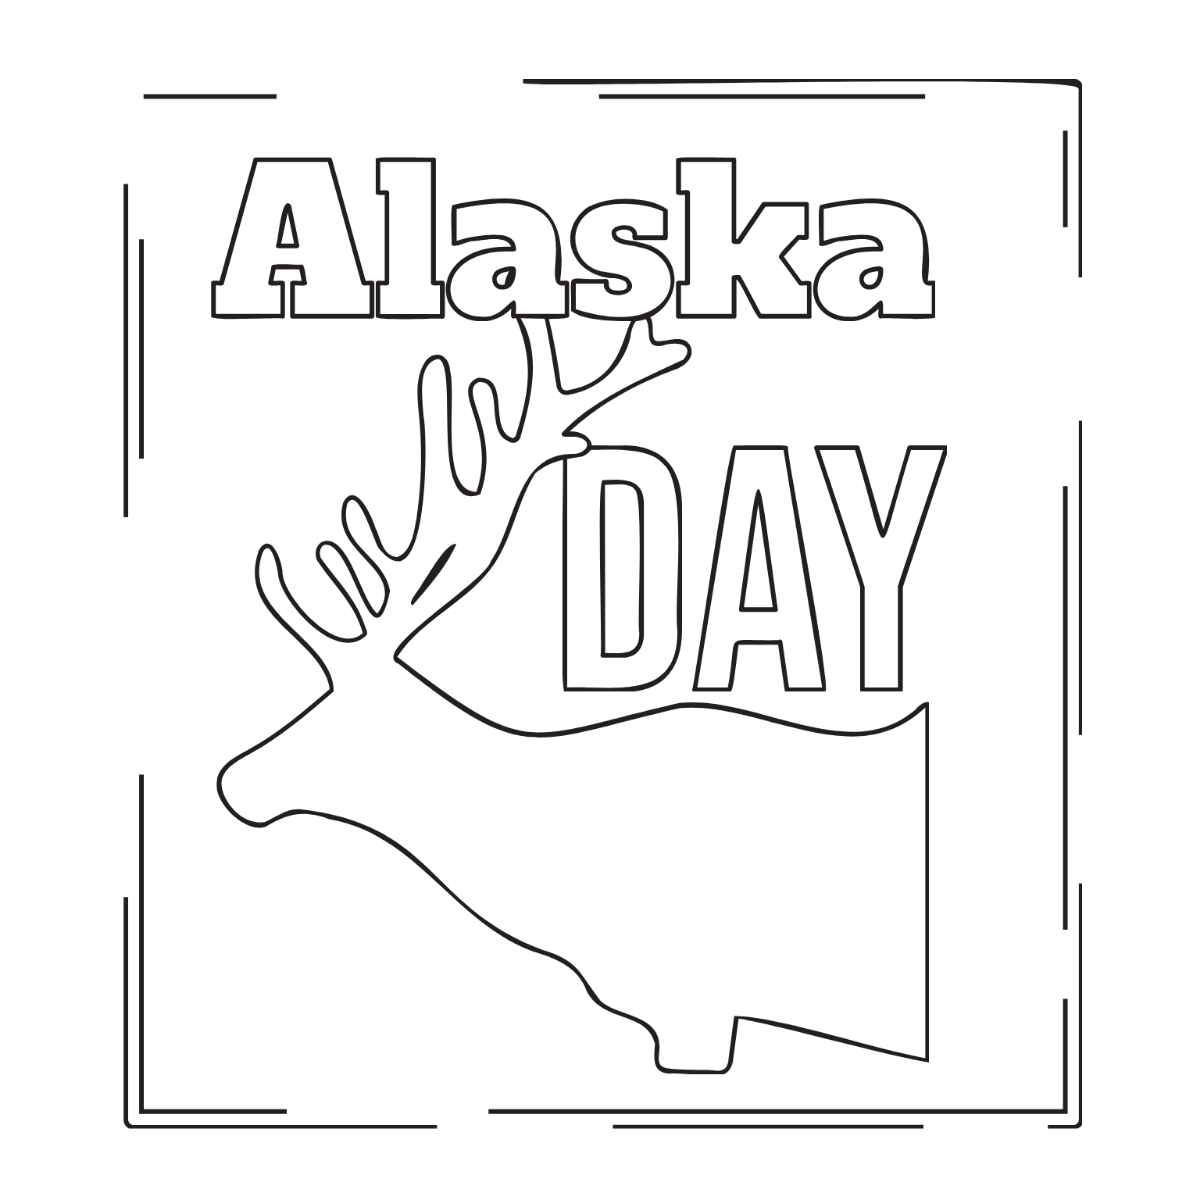 Alaska Day Drawing Vector